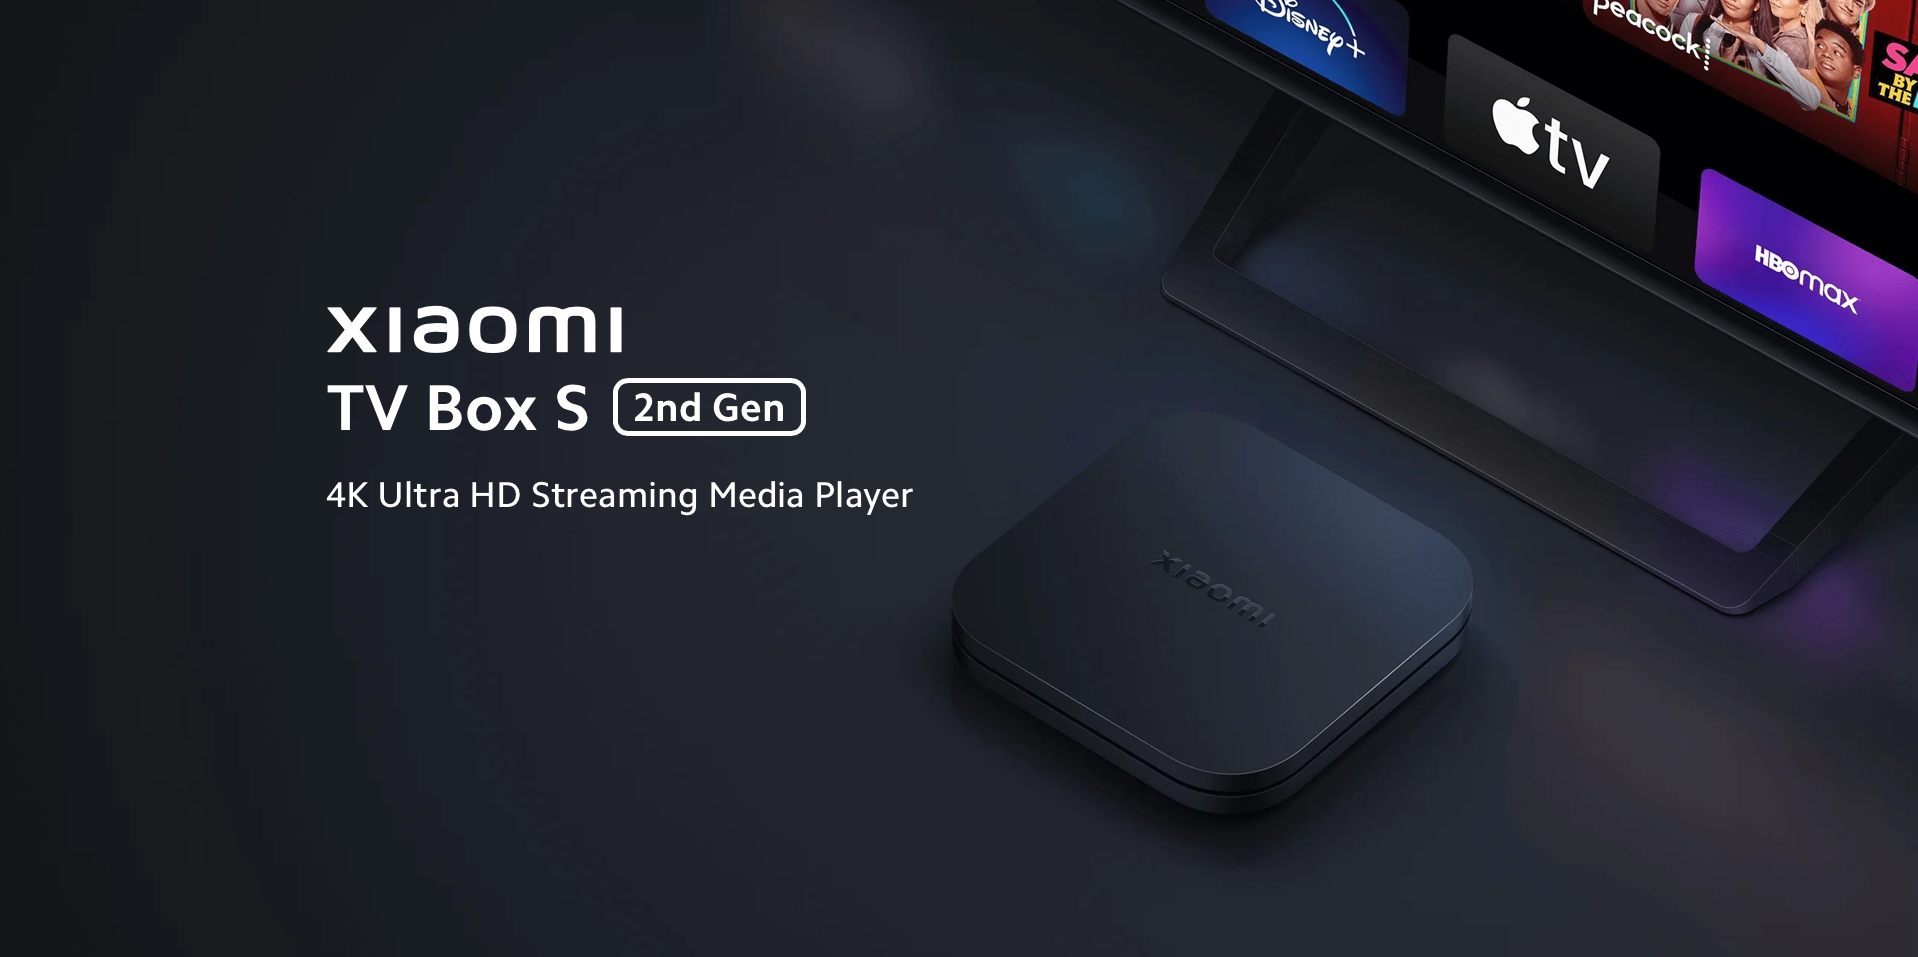 Xiaomi onthult TV Box S 4K (2nd Gen) op wereldmarkt met Google TV aan boord en nieuwe afstandsbediening